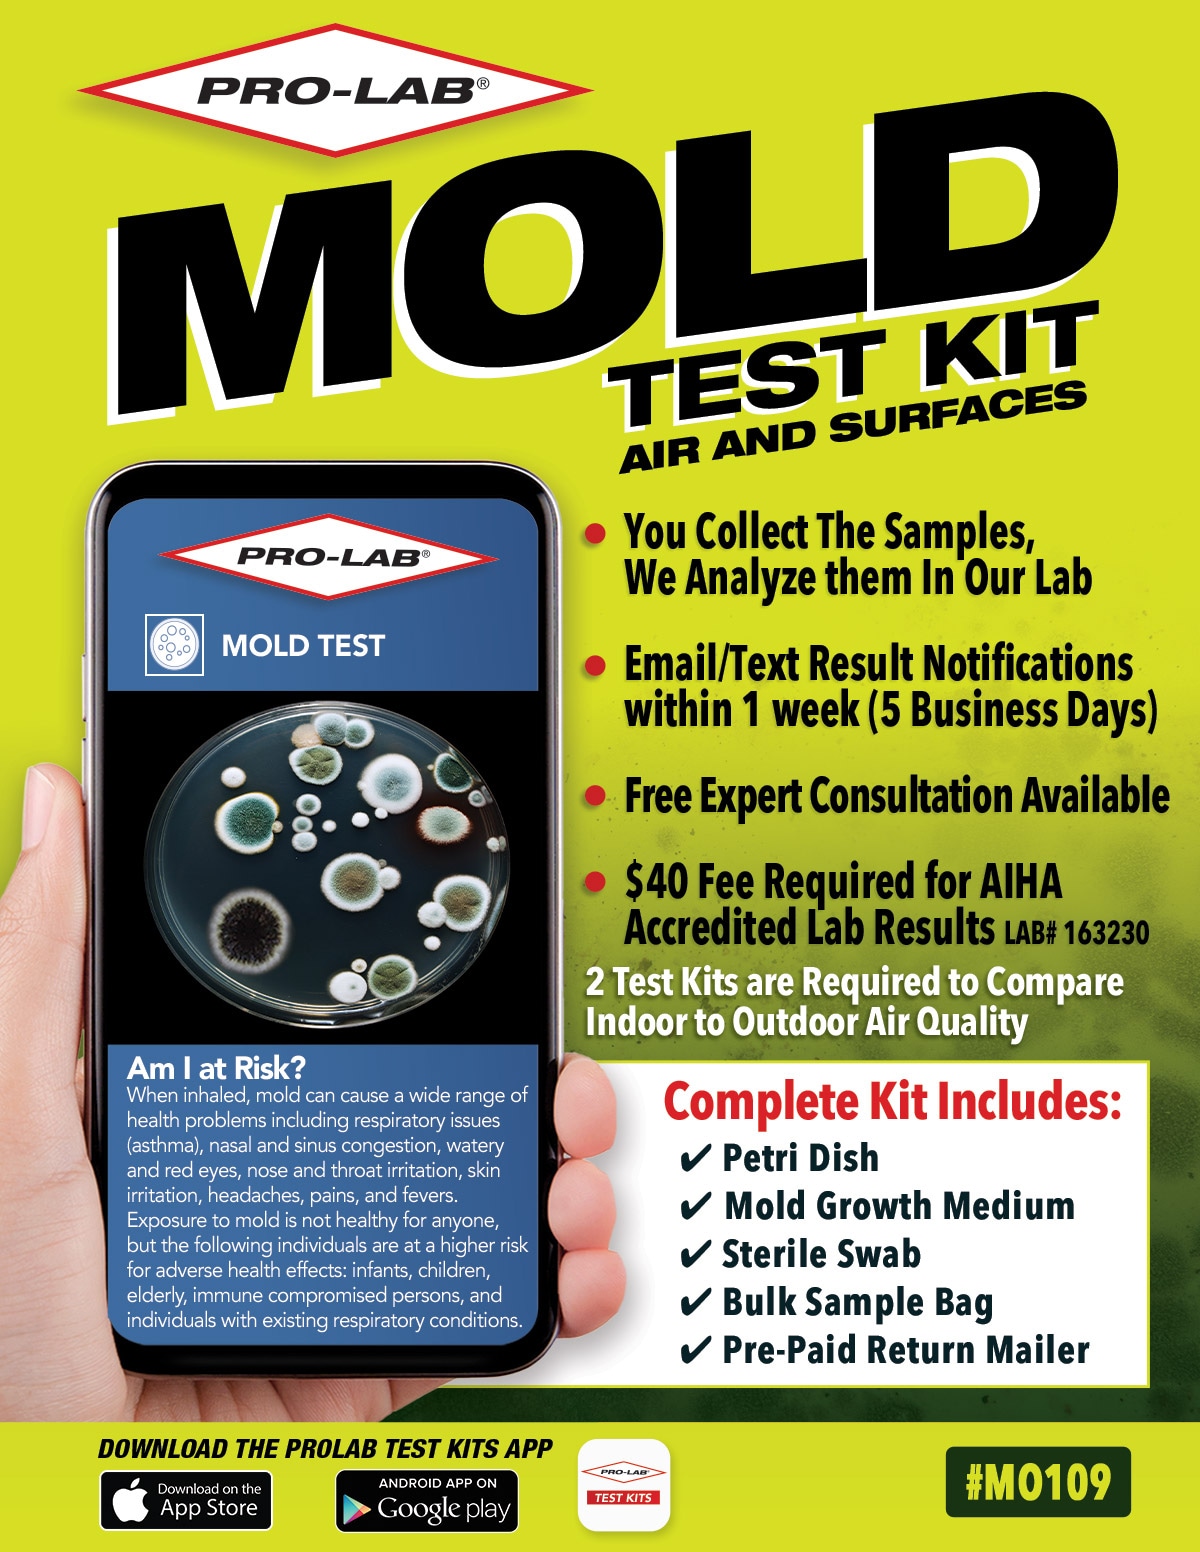 Mold Test Kits at